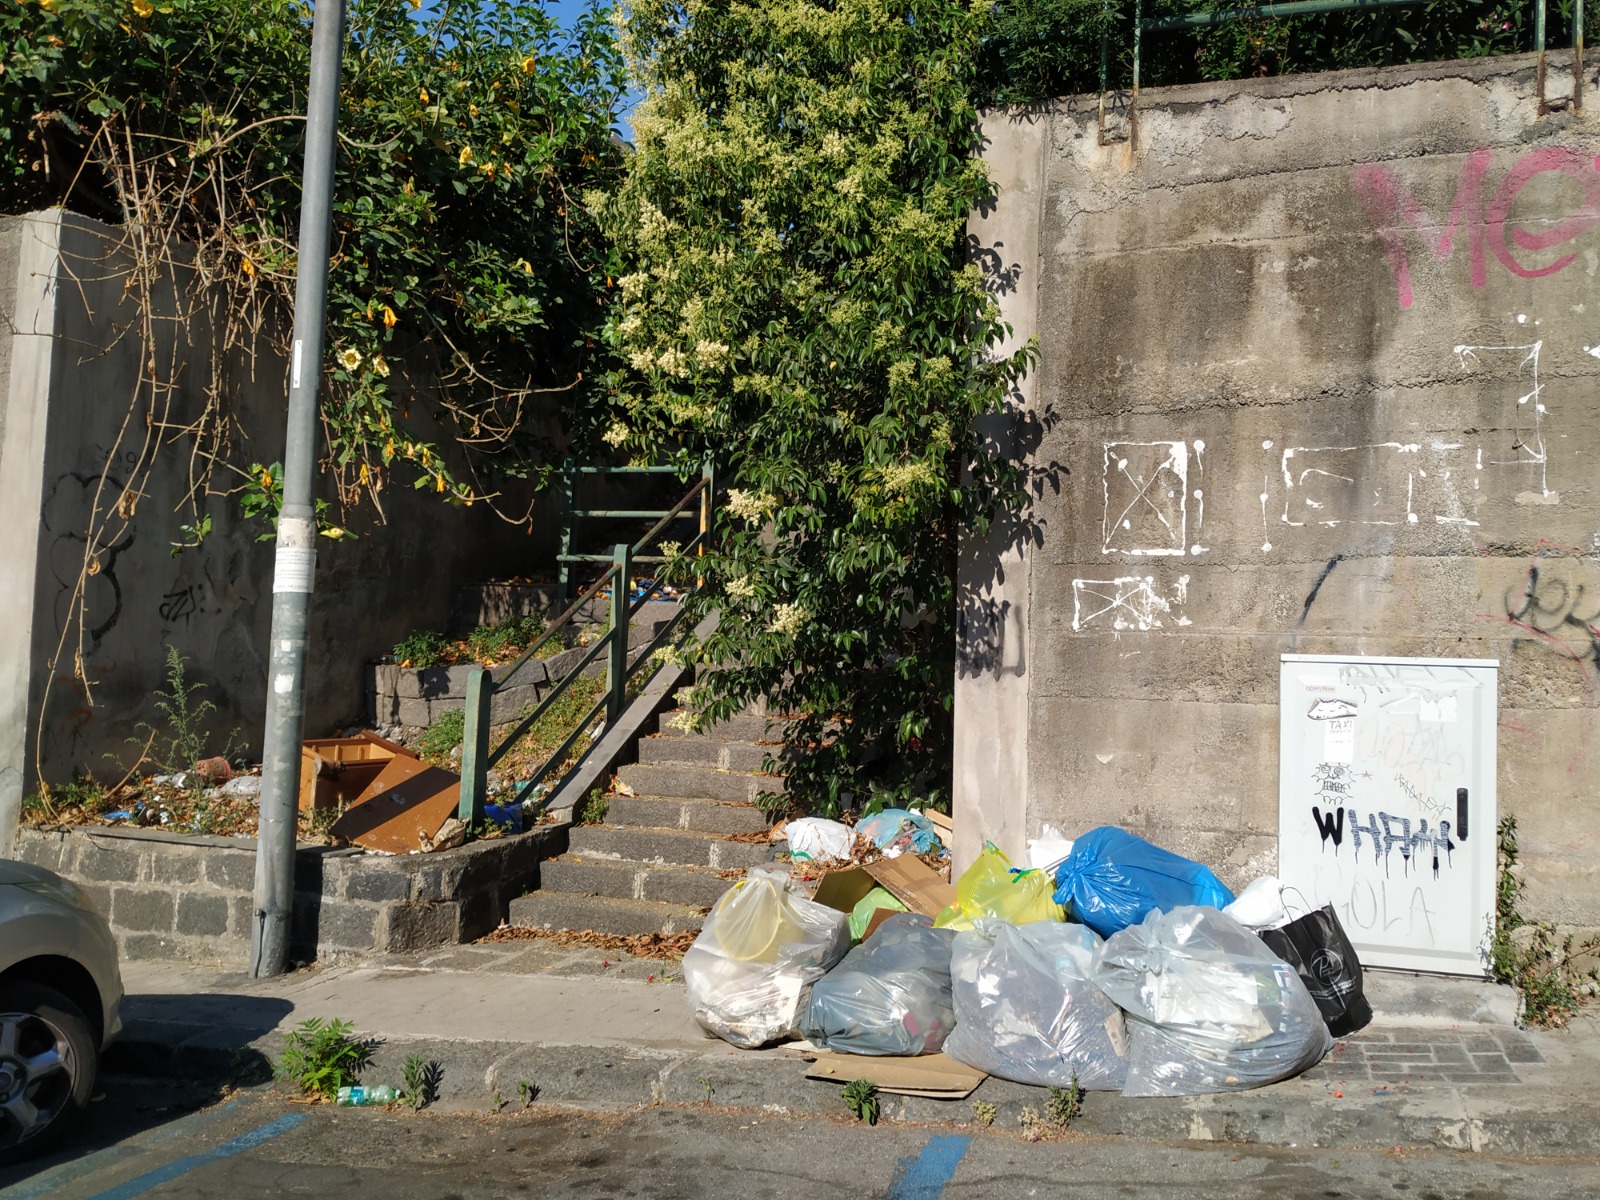 SOS intervento: degrado, abbandono, sporcizia e assenza di manutenzione nel quartiere Borgo-Sanzio